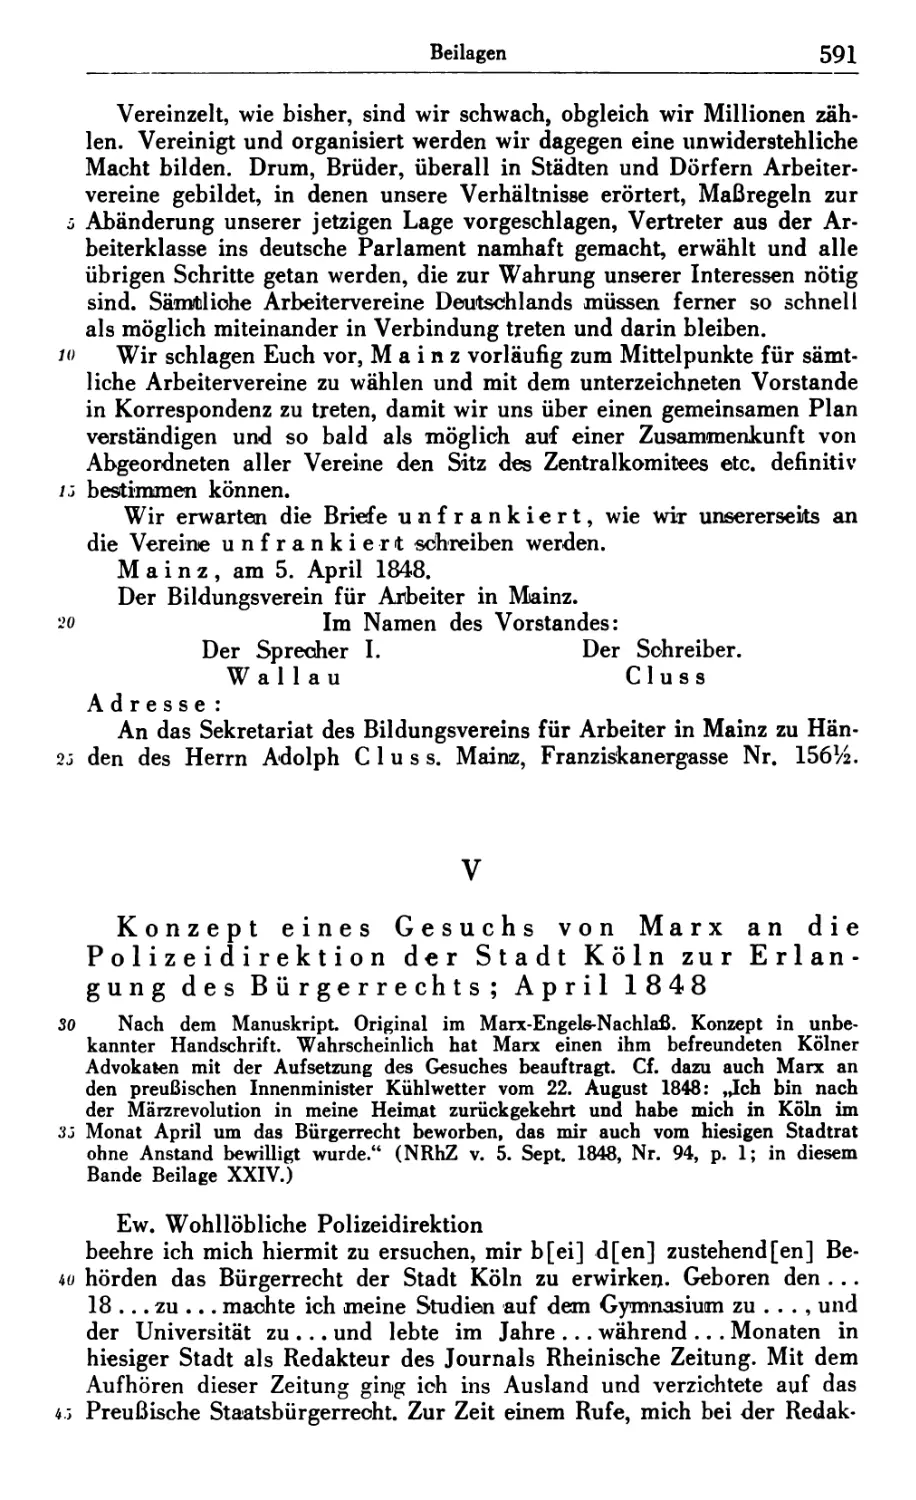 V. Konzept eines Gesuchs von Marx an die Polizeidirektion der Stadt Köln zur Erlangung des Bürgerrechts; April 1848